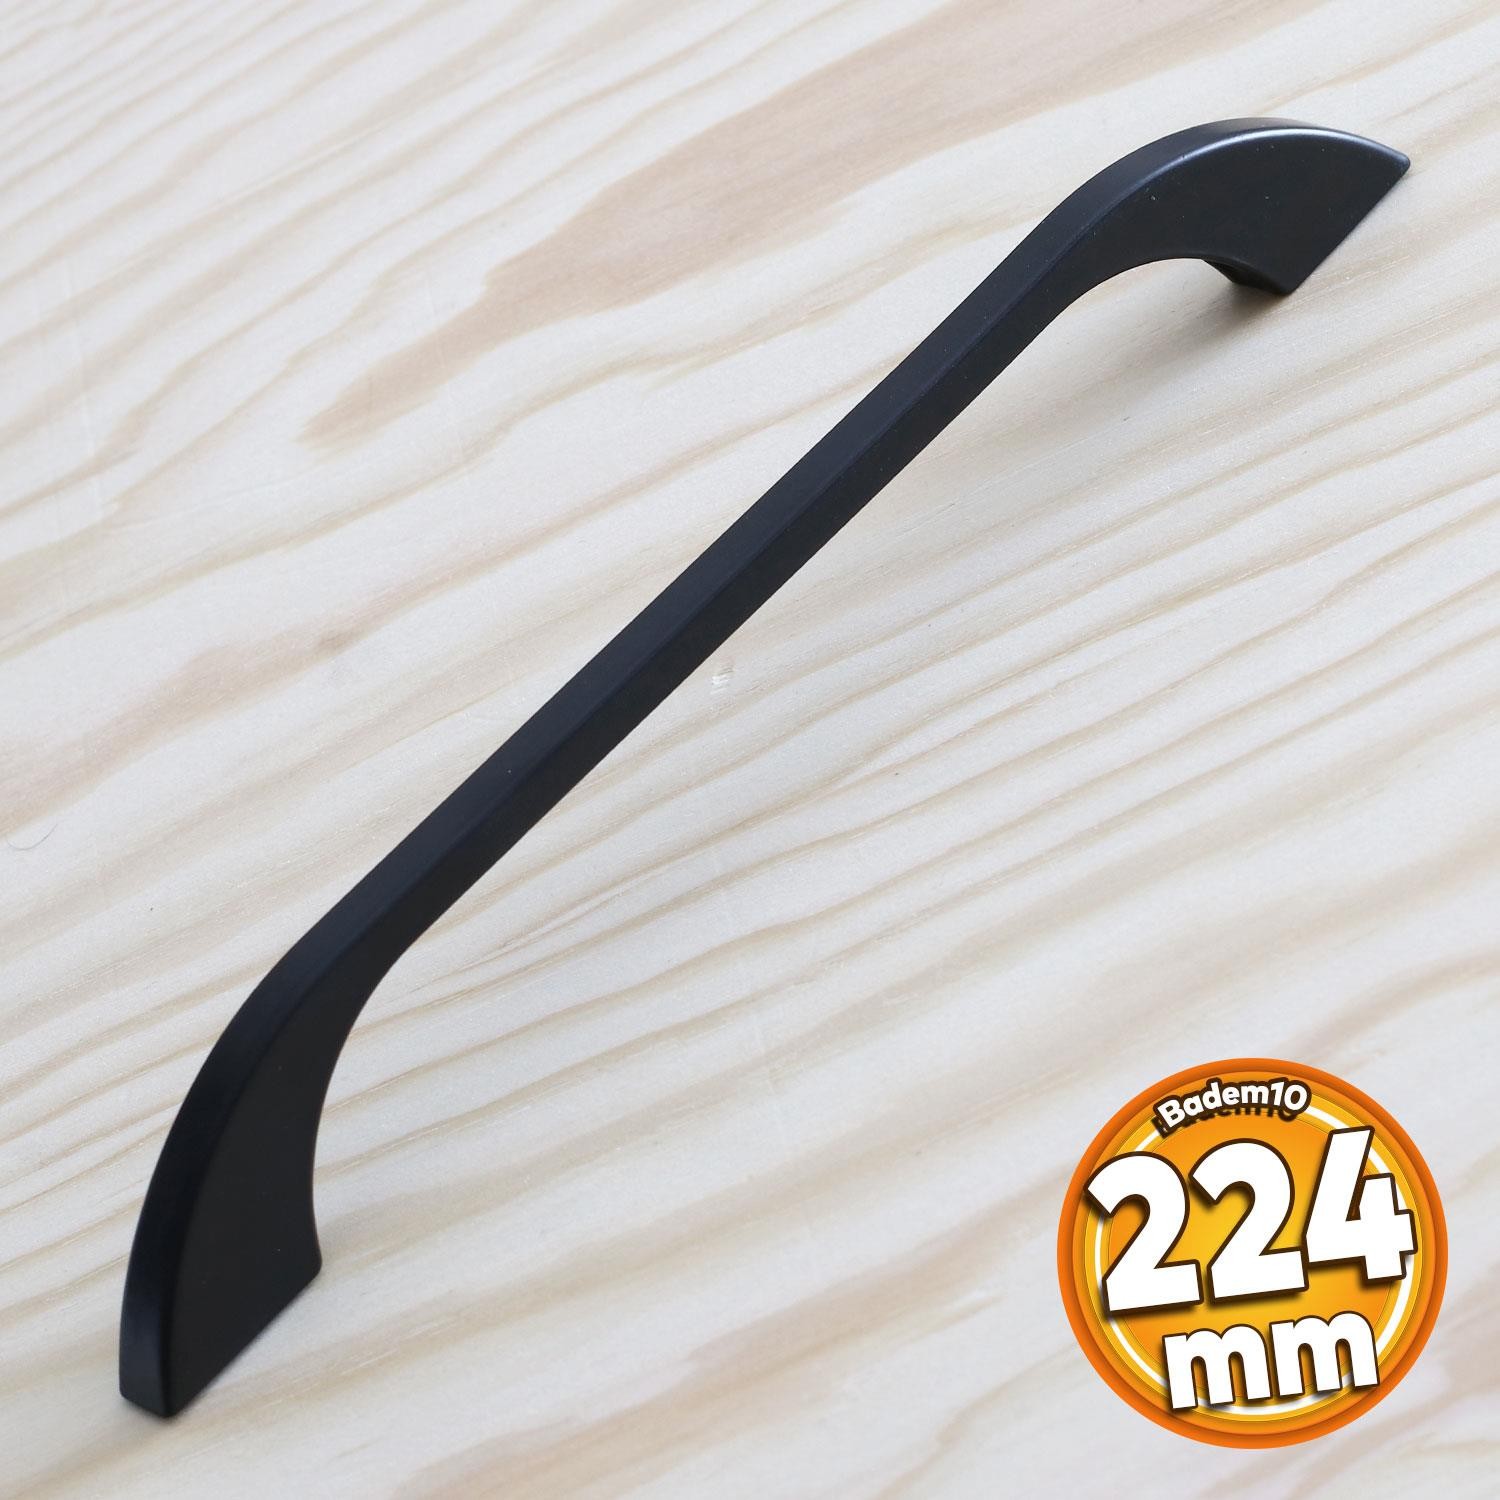 Ezgi Kulp 224 mm Siyah Metal Mutfak Mobilya Çekmece Mutfak Dolap Dolabı Kulpları Kapak Kulbu 22.4 cm